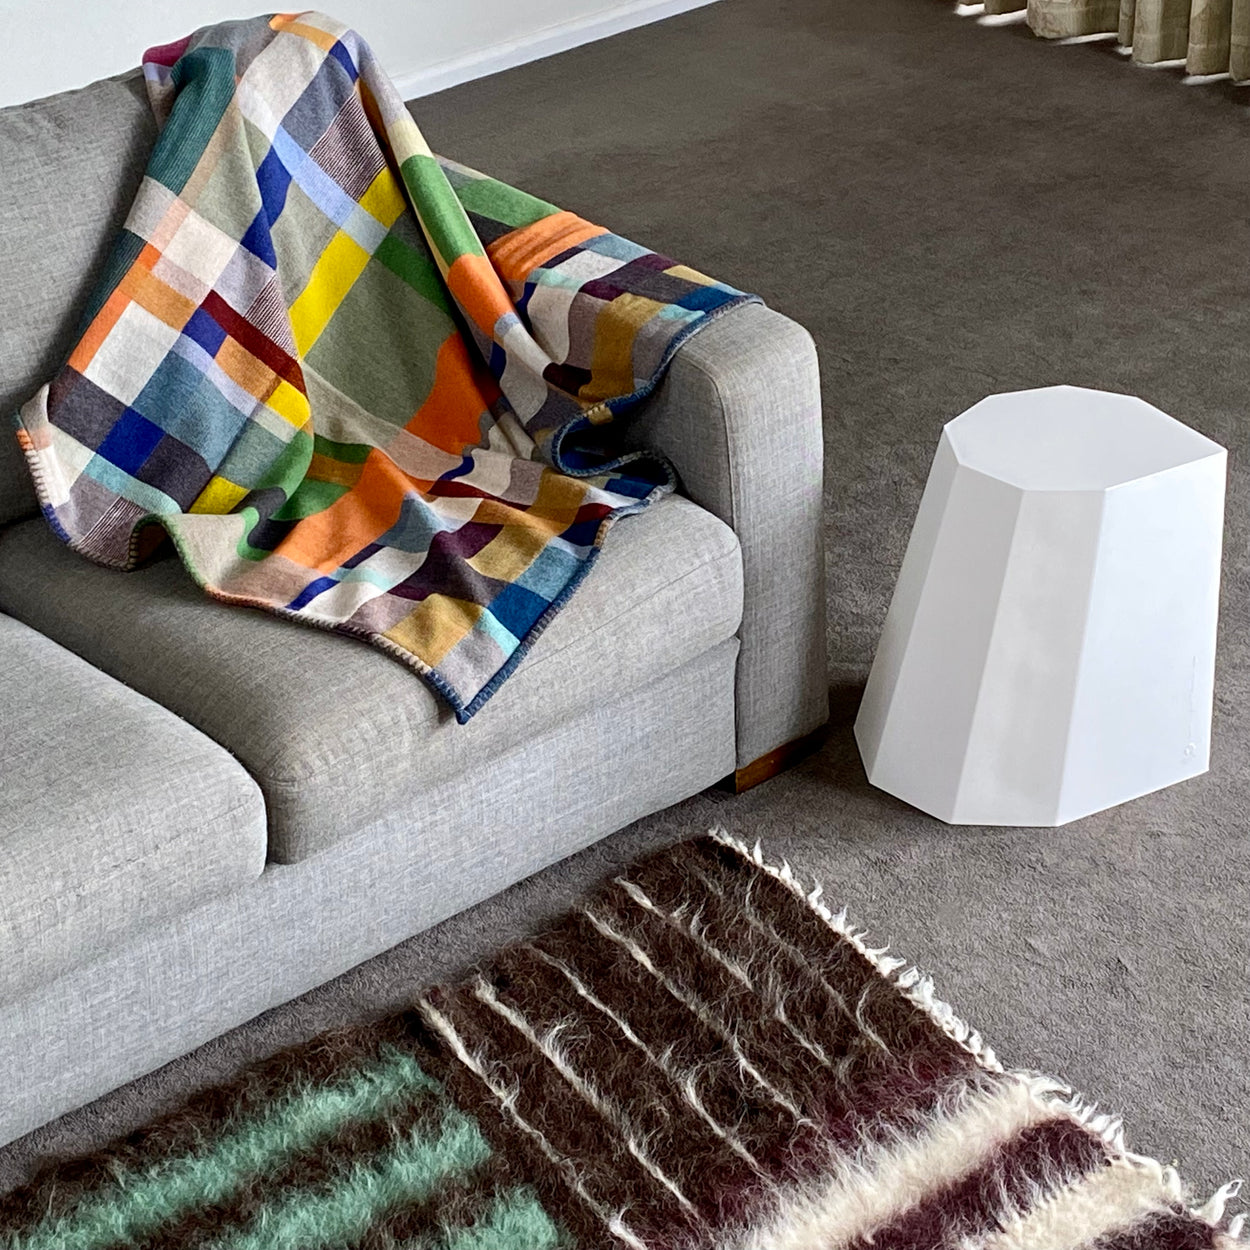 Premium Australian Merino Wool Throw Blanket - Gwynne on grey sofa next to white cotton Arnold Circus Stool